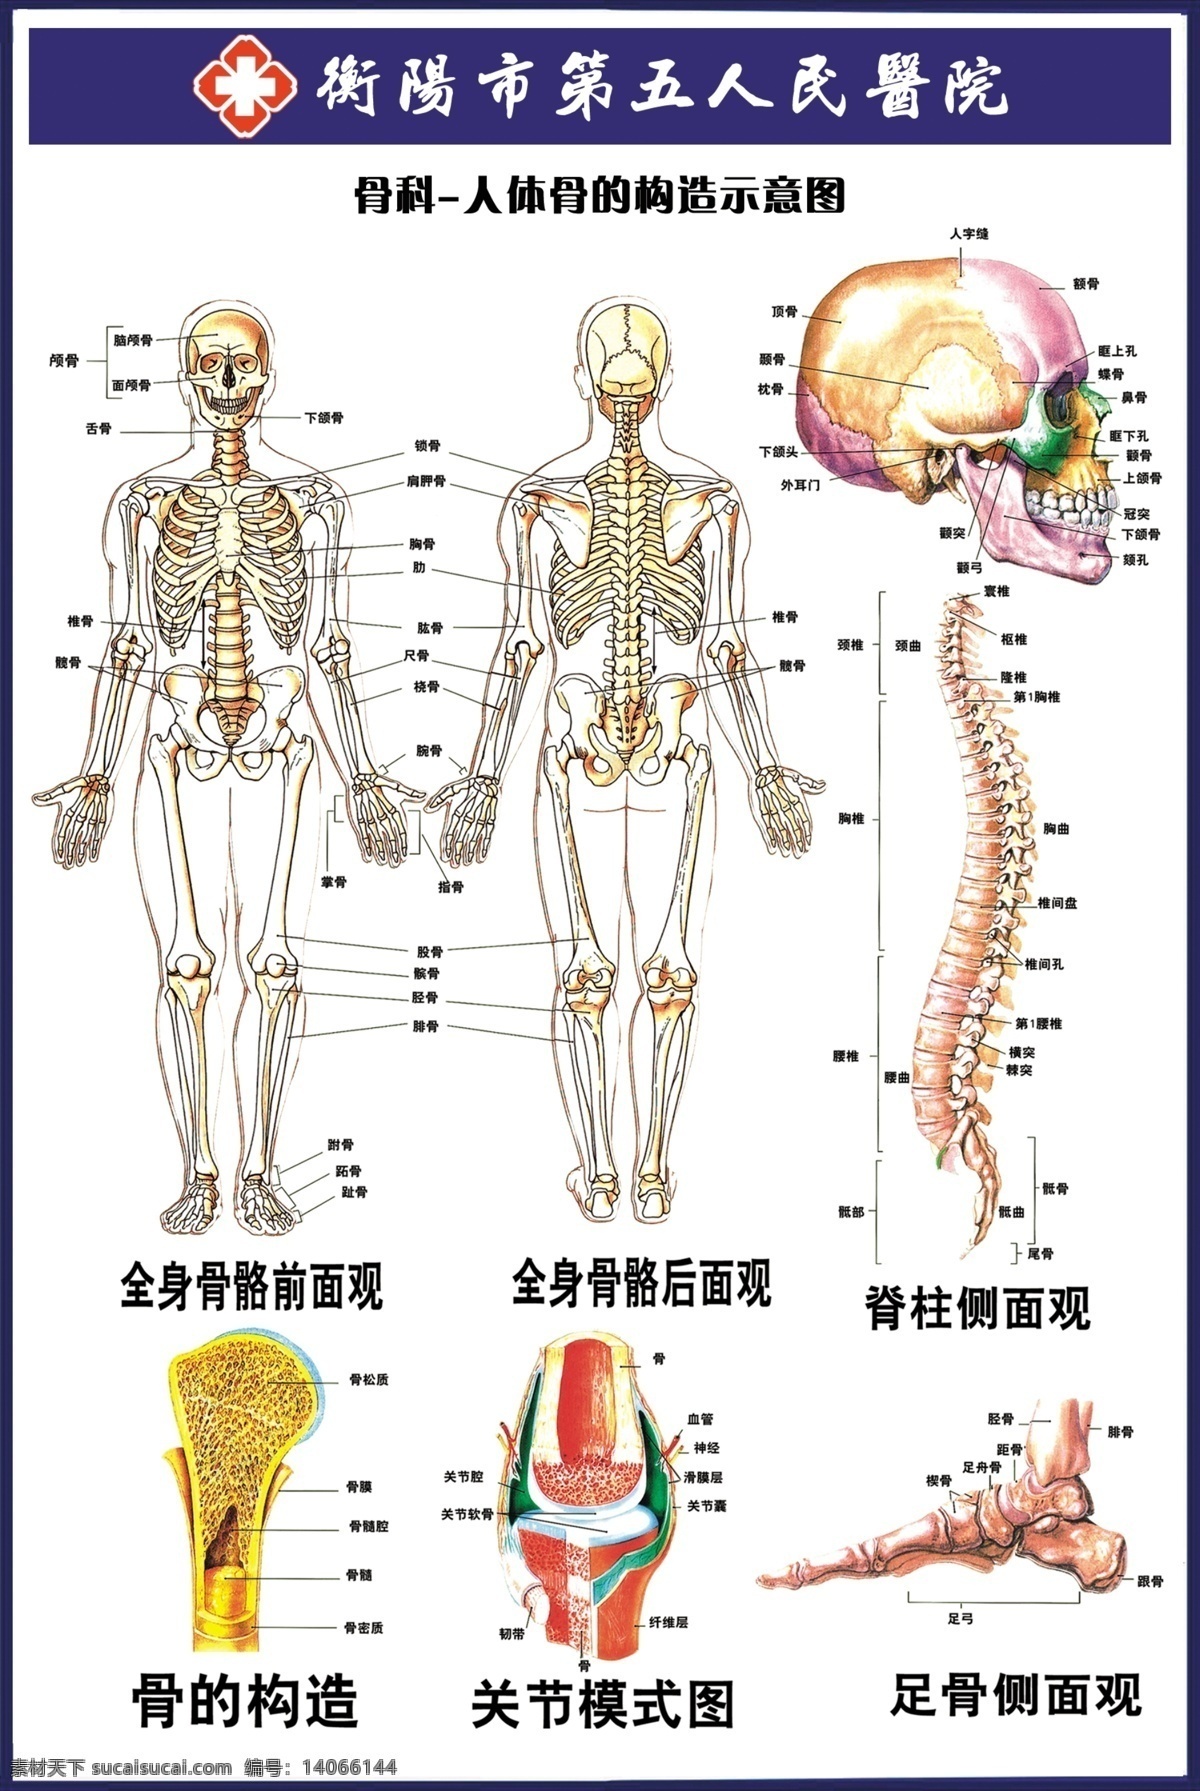 骨的构造图 骨的构造 关节模式图 足骨侧面观 医院 医院素材 医疗展板 展板背景 医学 骨科 示意图 图解